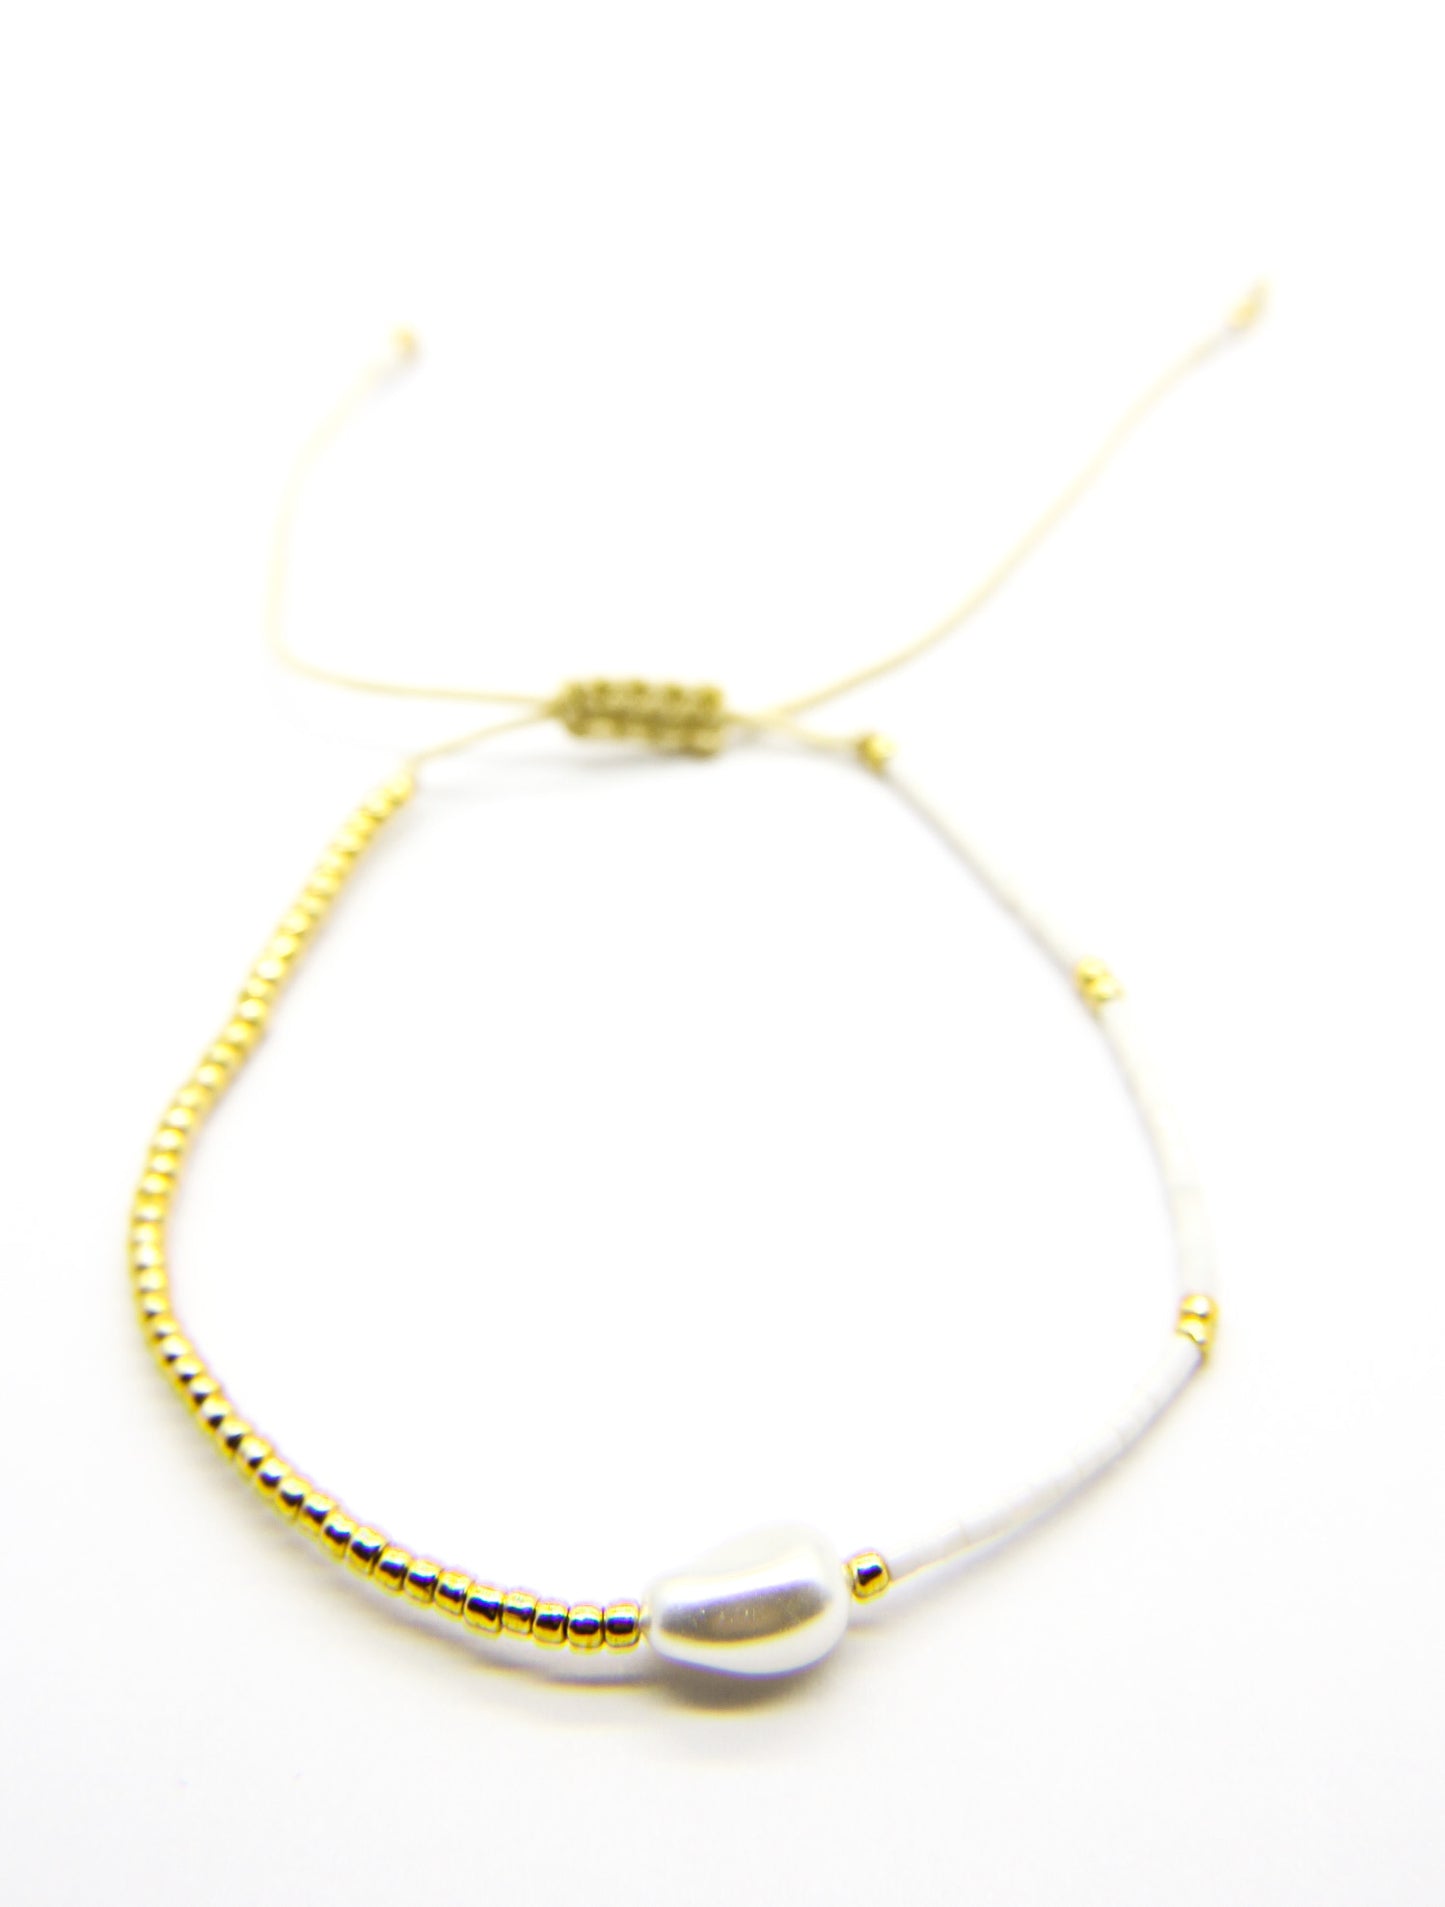 Vaiava - Seed Bead Bracelet with Pearl